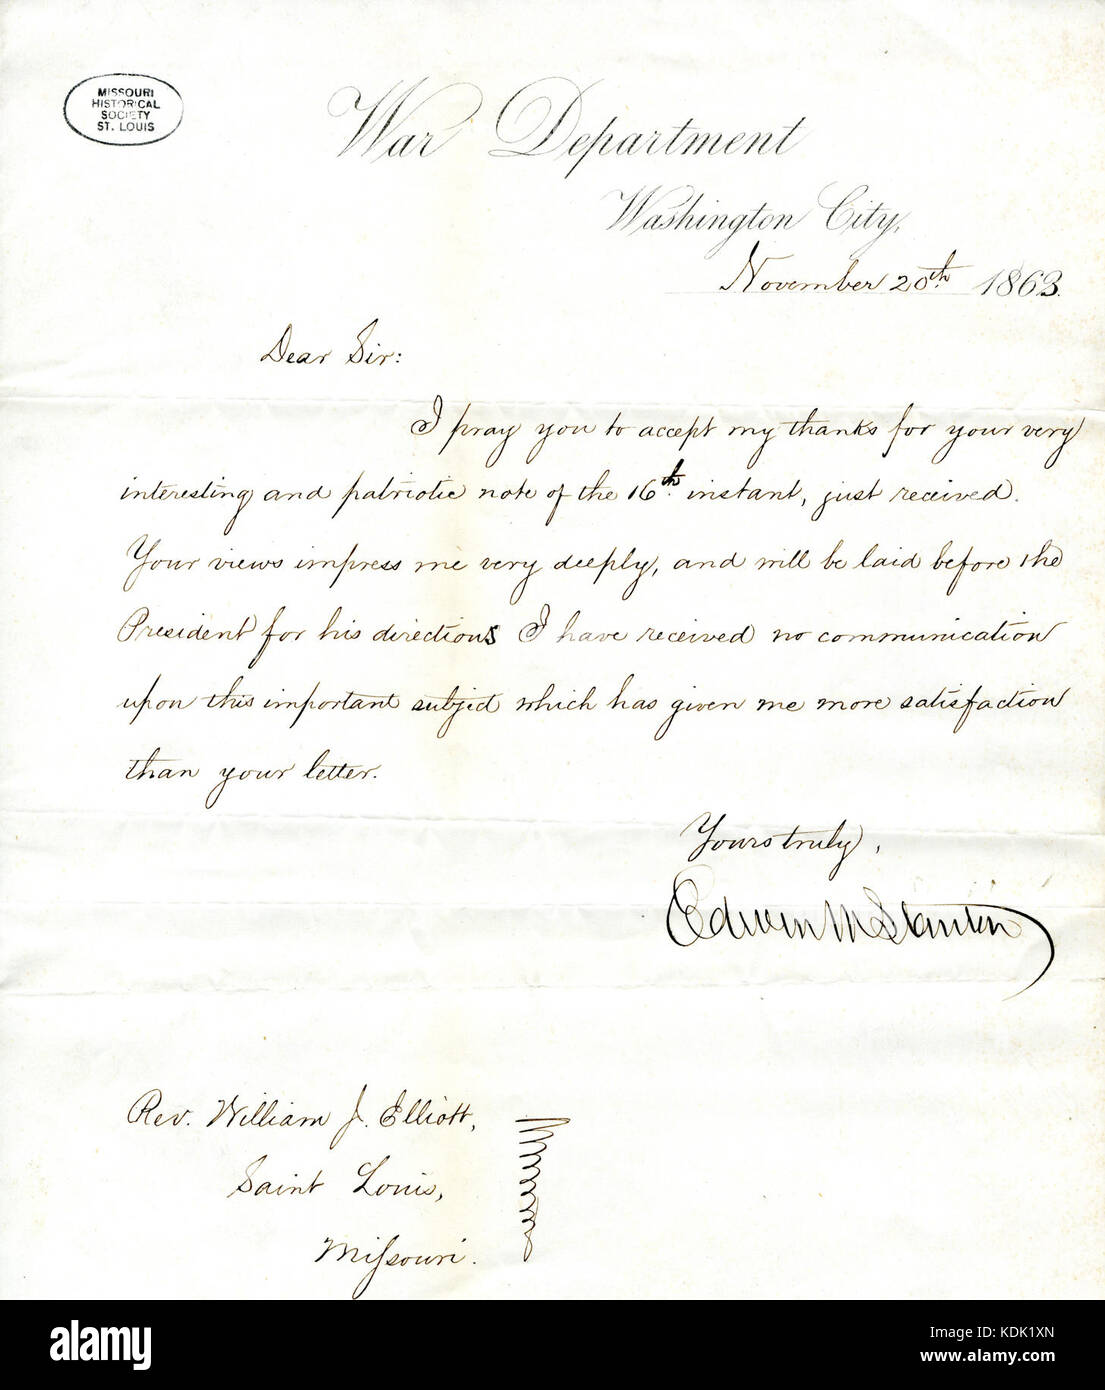 Lettre signée Edwin M. Stanton, Ministère de la guerre, Washington, ville de révérend William G. Eliot, Saint Louis, Missouri, le 20 novembre, 1863 Banque D'Images